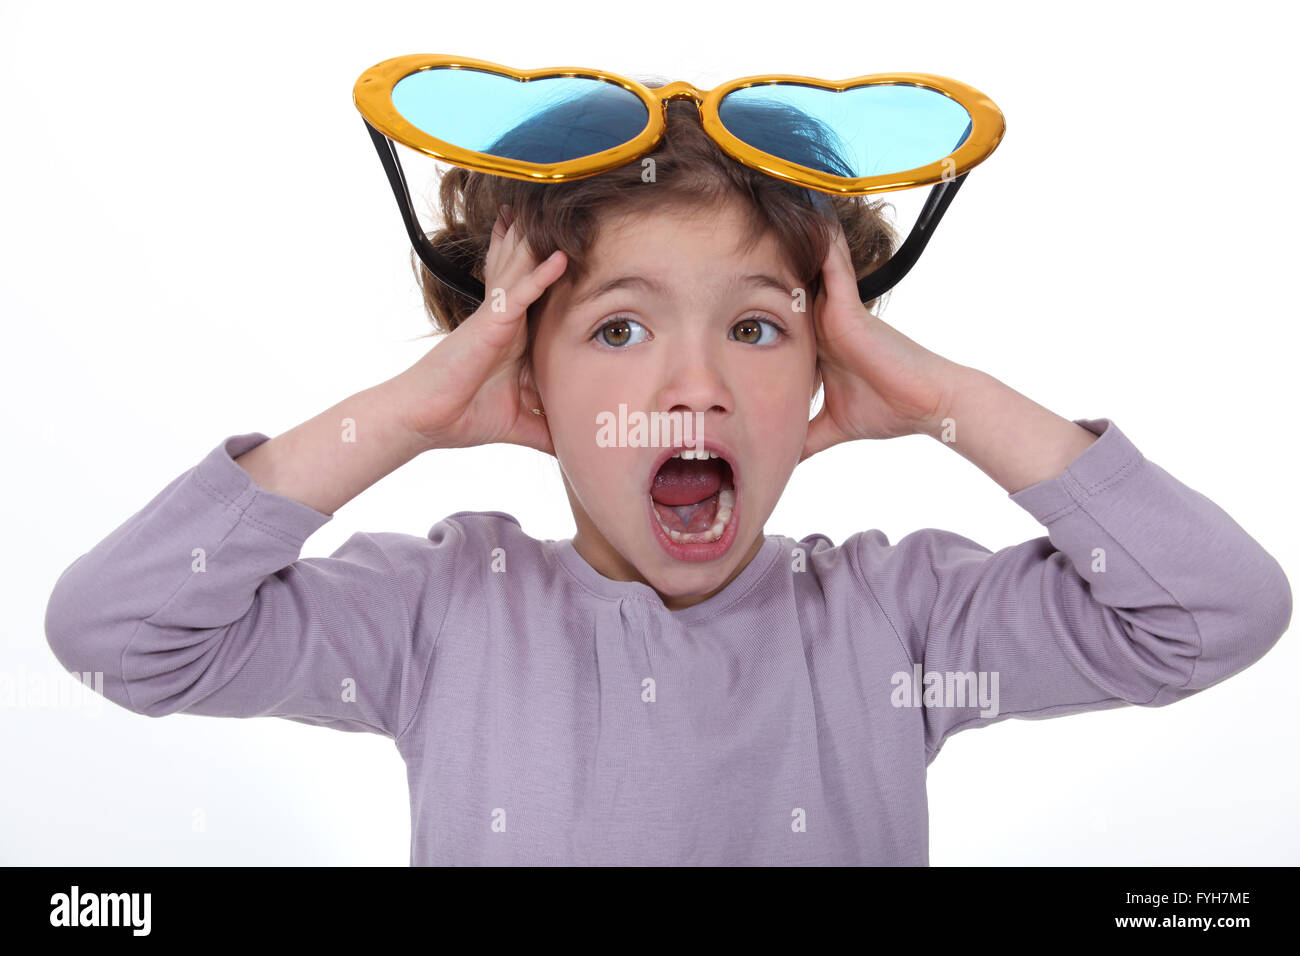 Petite fille hurlant avec d'énormes lunettes drôles sur la tête Photo Stock  - Alamy